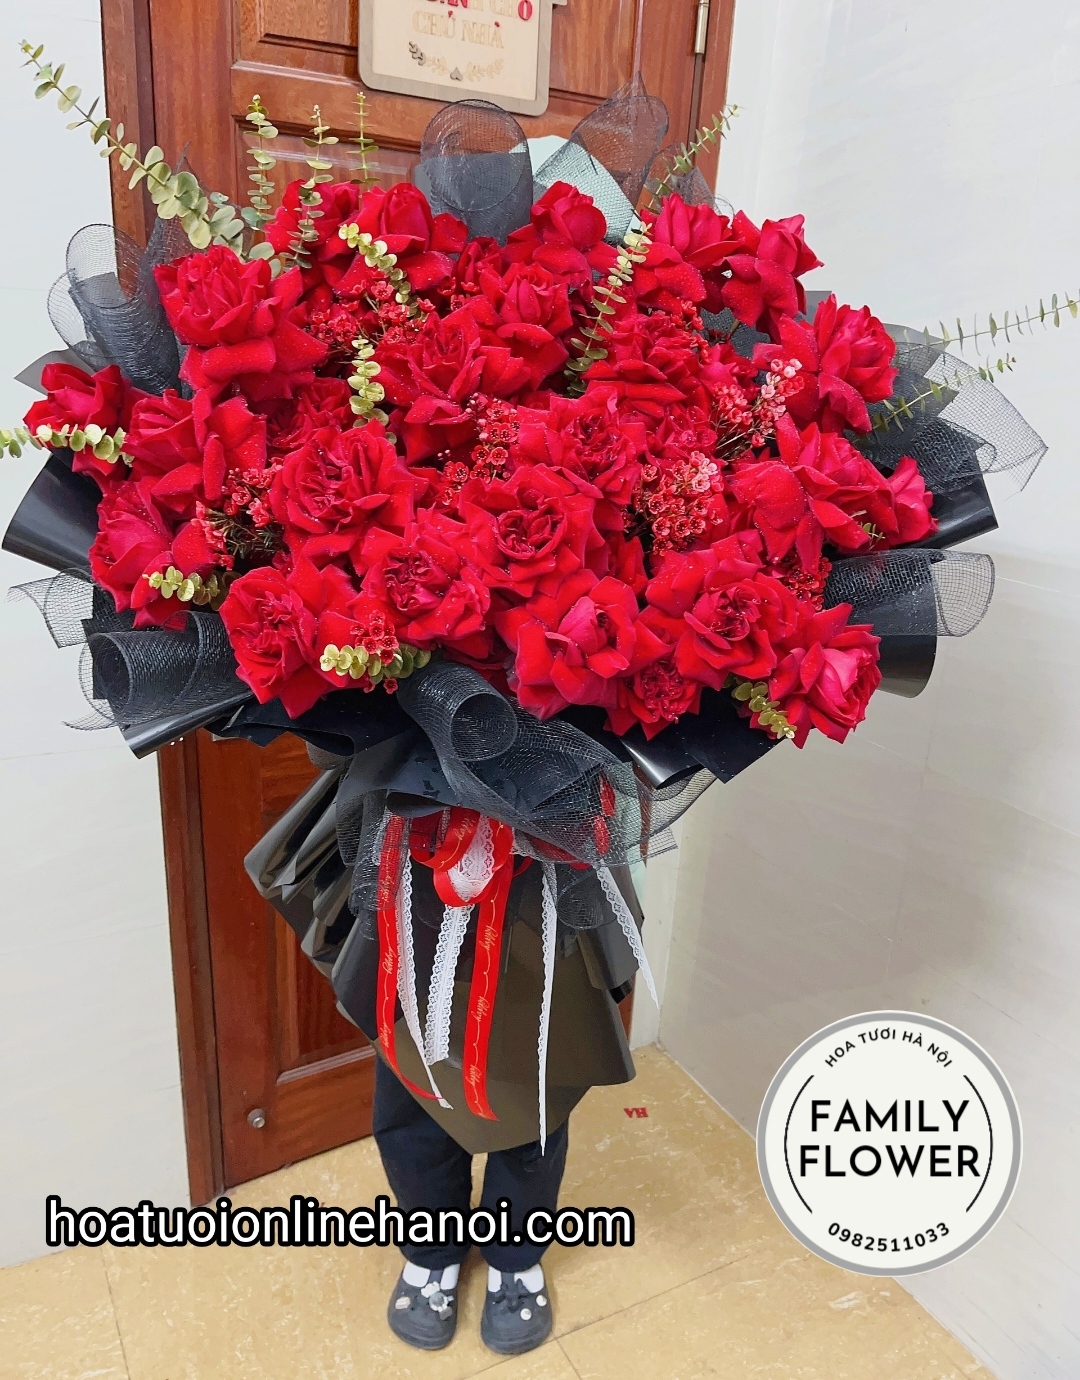 Bó hoa hồng khổng lồ tặng bạn gái , tặng vợ thể hiện tình cảm .